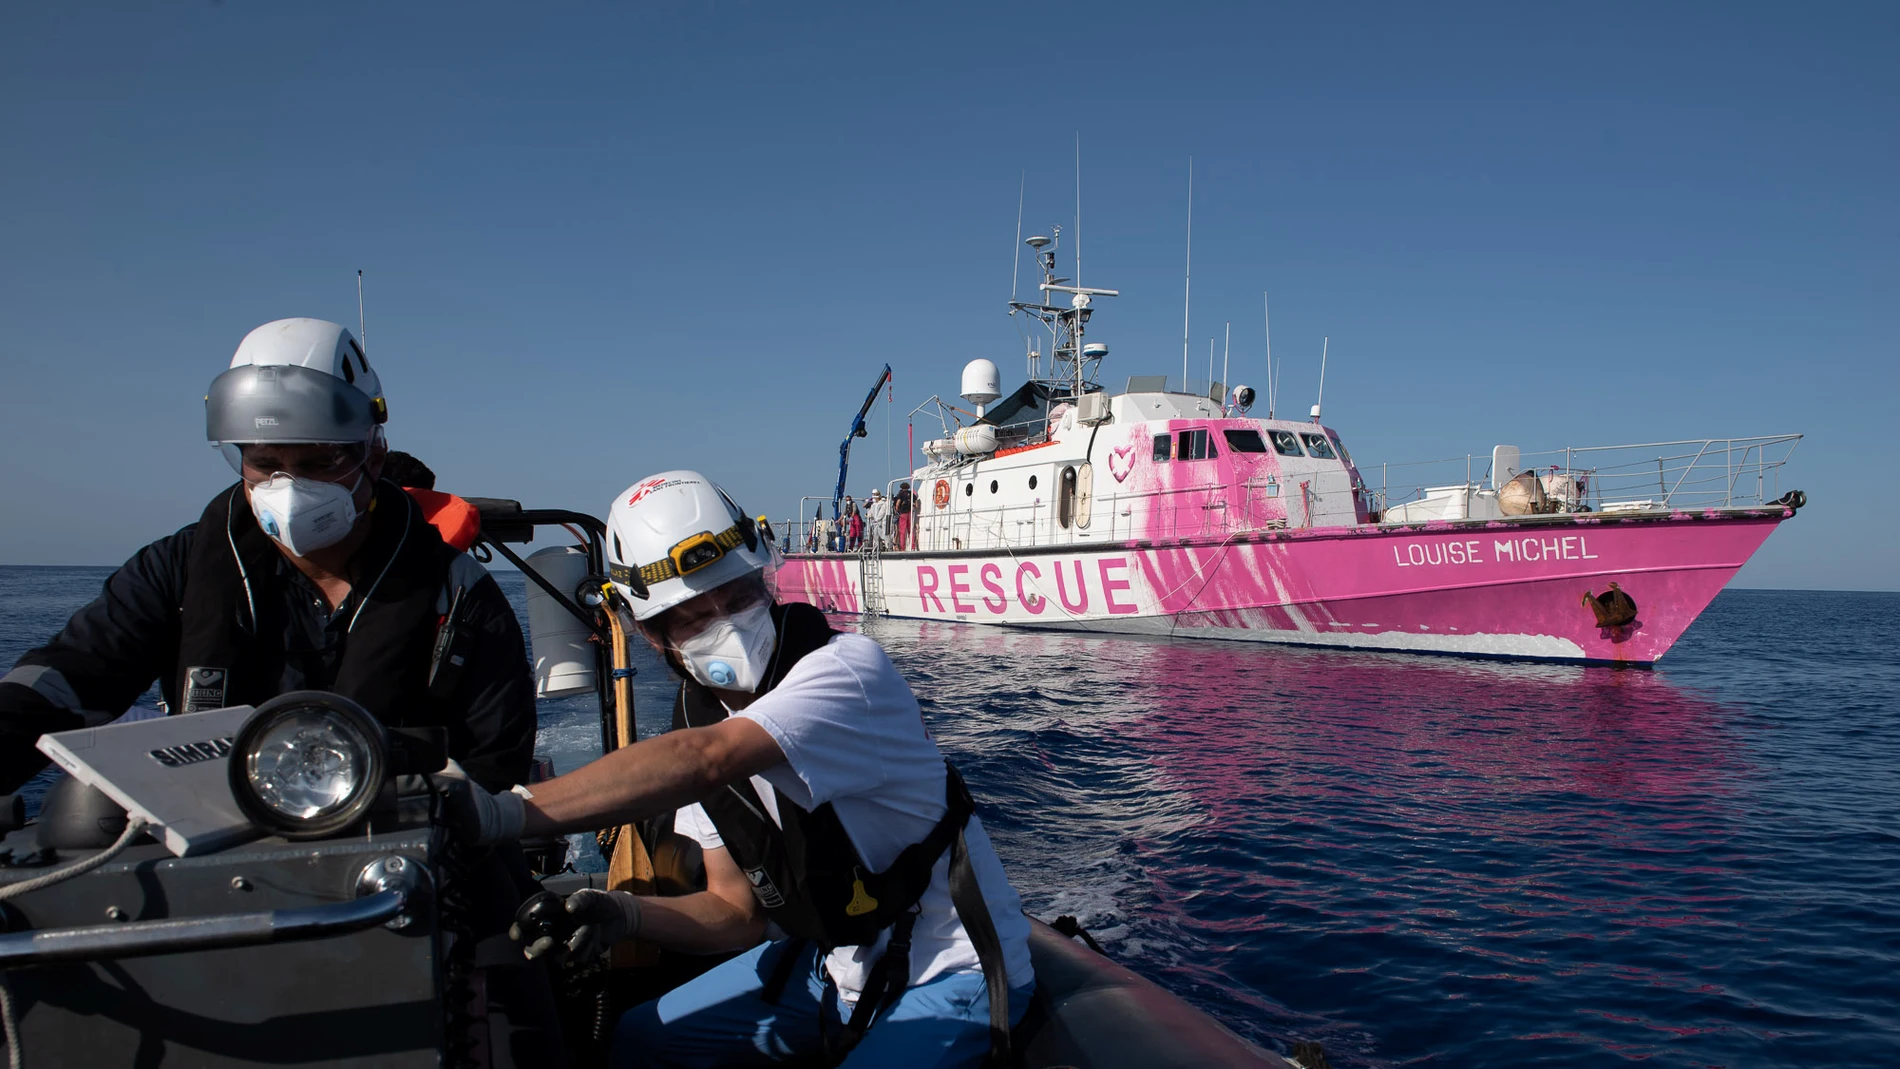 Imagen del Louis Michel, barco humanitario financiado por Banksy